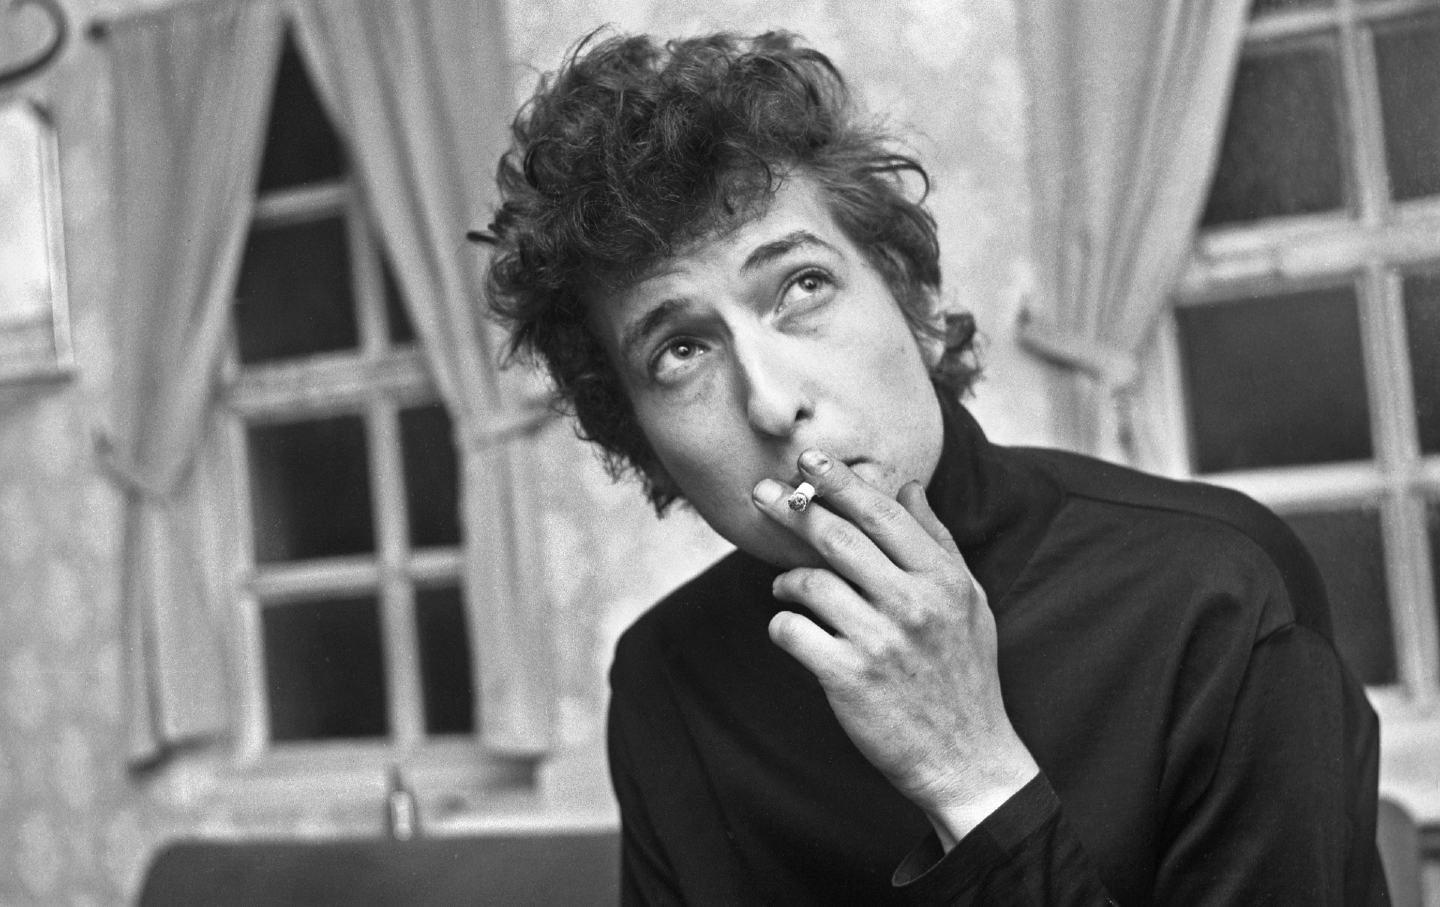 Bob Dylan at Montfort Hall, Leicester (U.K.) in 1965.